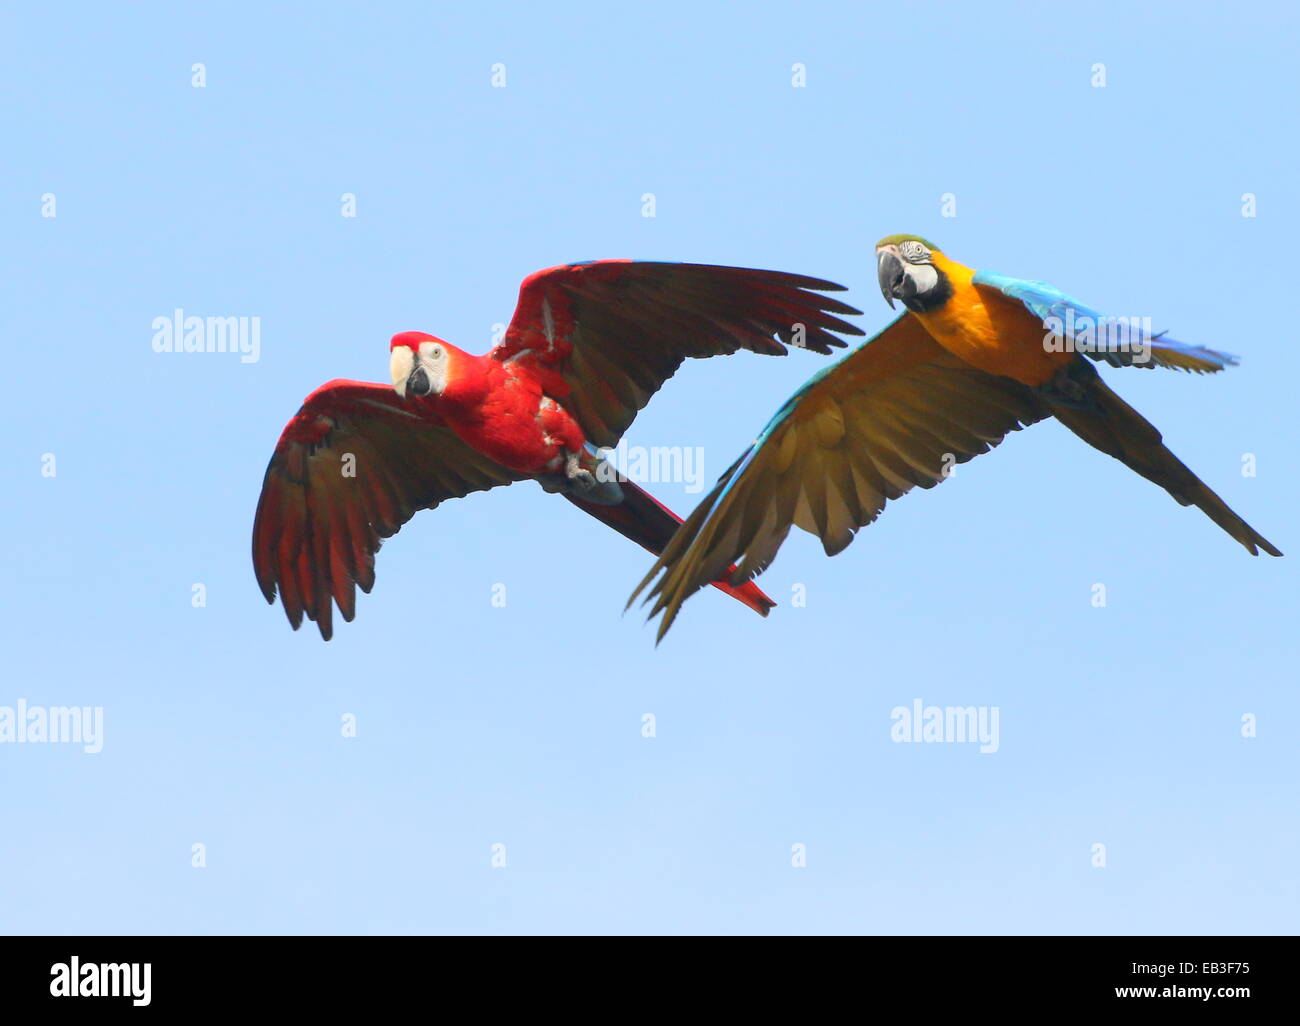 Guacamayo azul y amarillo (Ara ararauna) en vuelo, acompañado por una guacamaya roja (Ara macao) Foto de stock